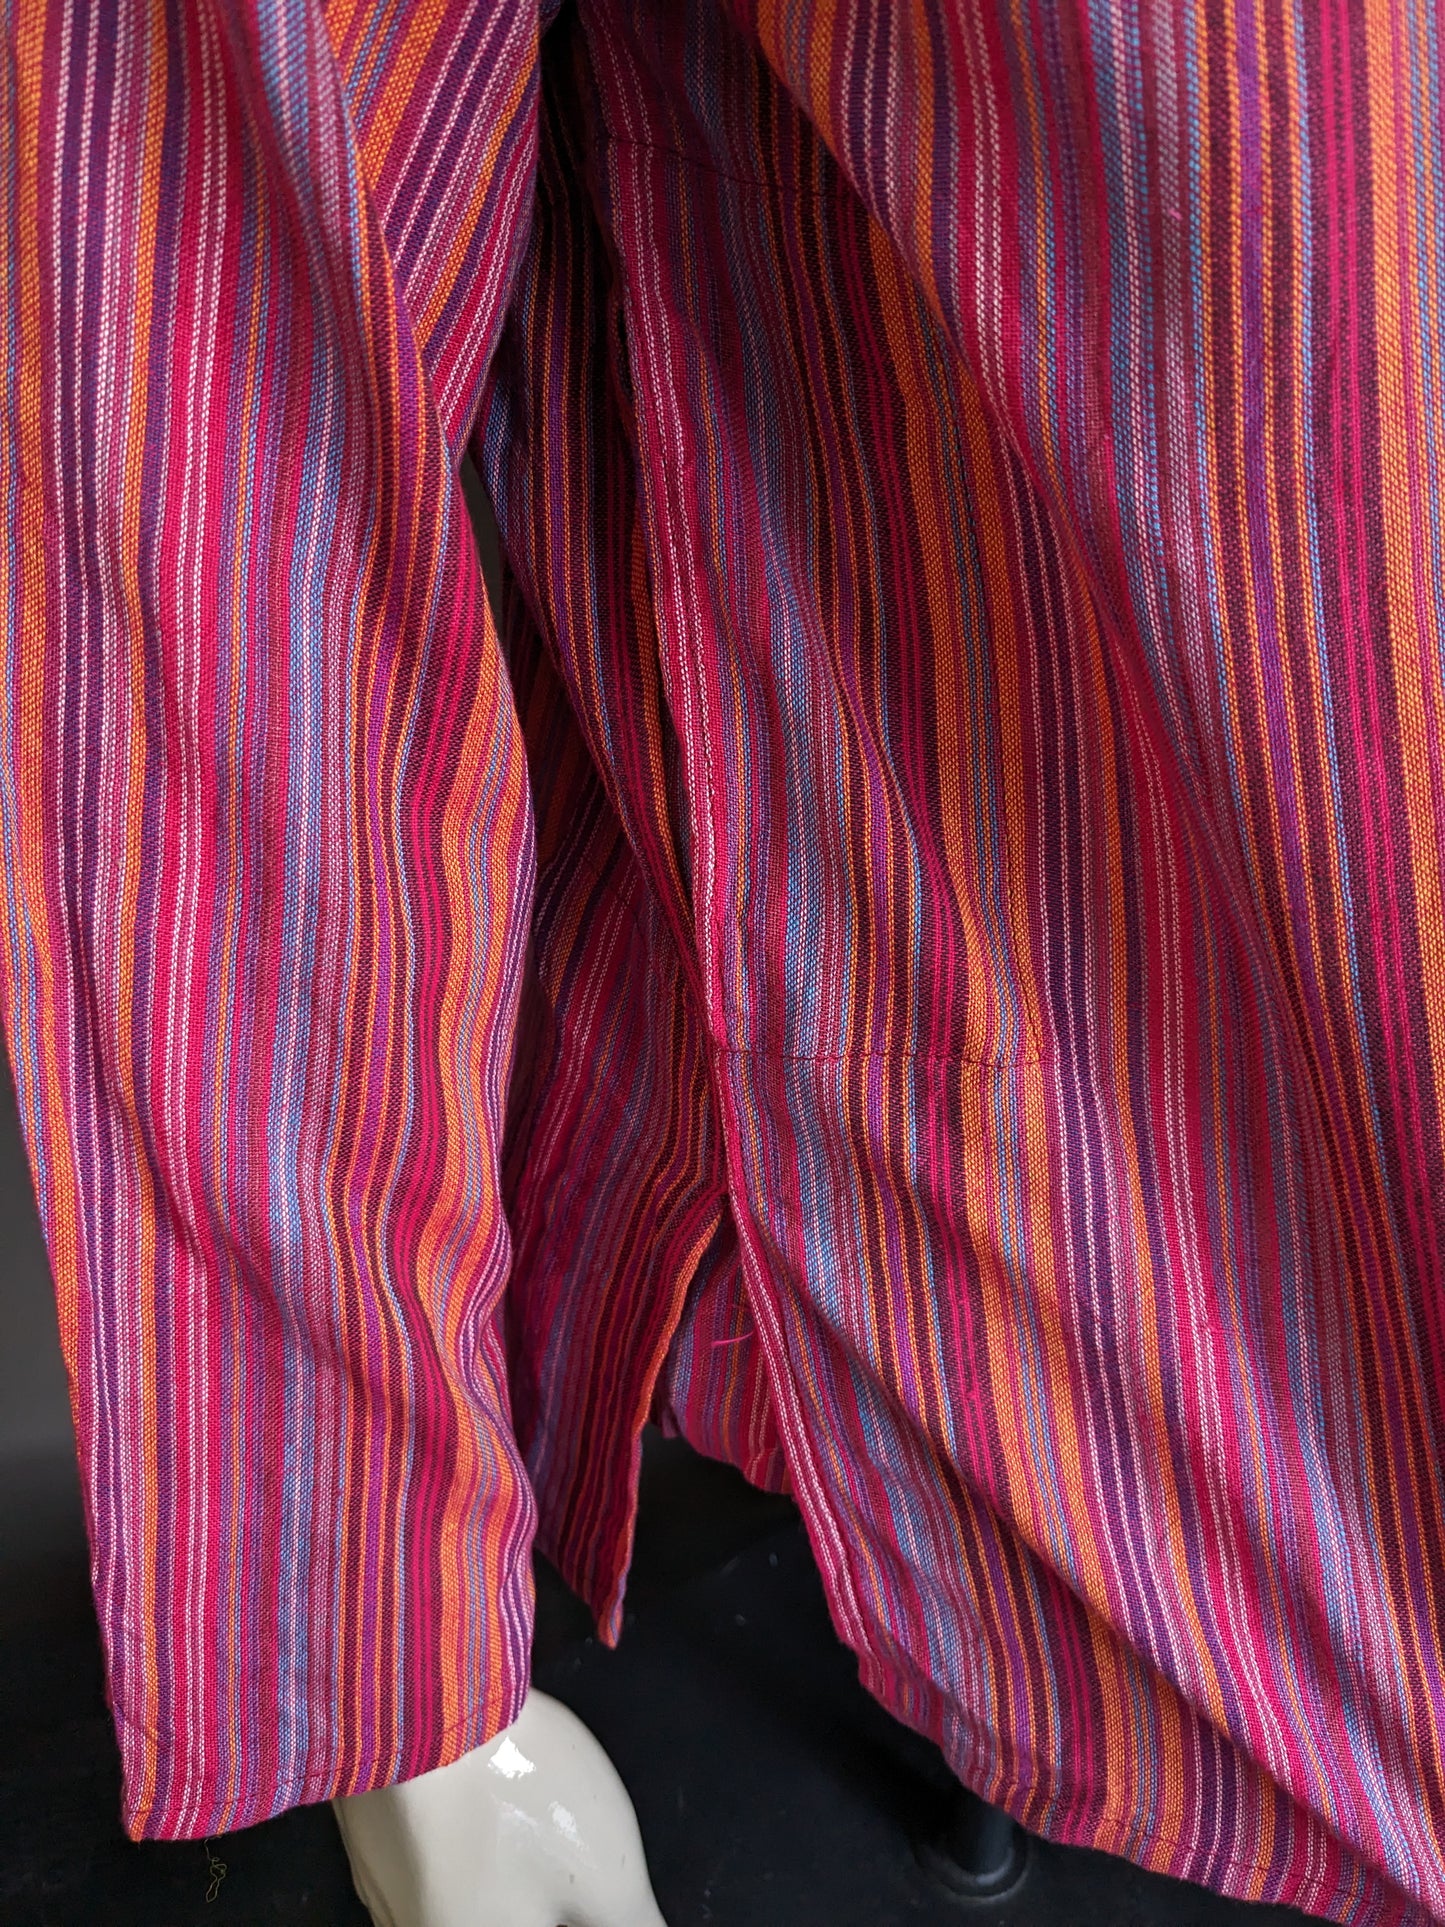 Vintage Modas Bagdad polotrui / overhemd met mao / opstaande / farmer kraag. Rood / gekleurd gestreept. Maat L.